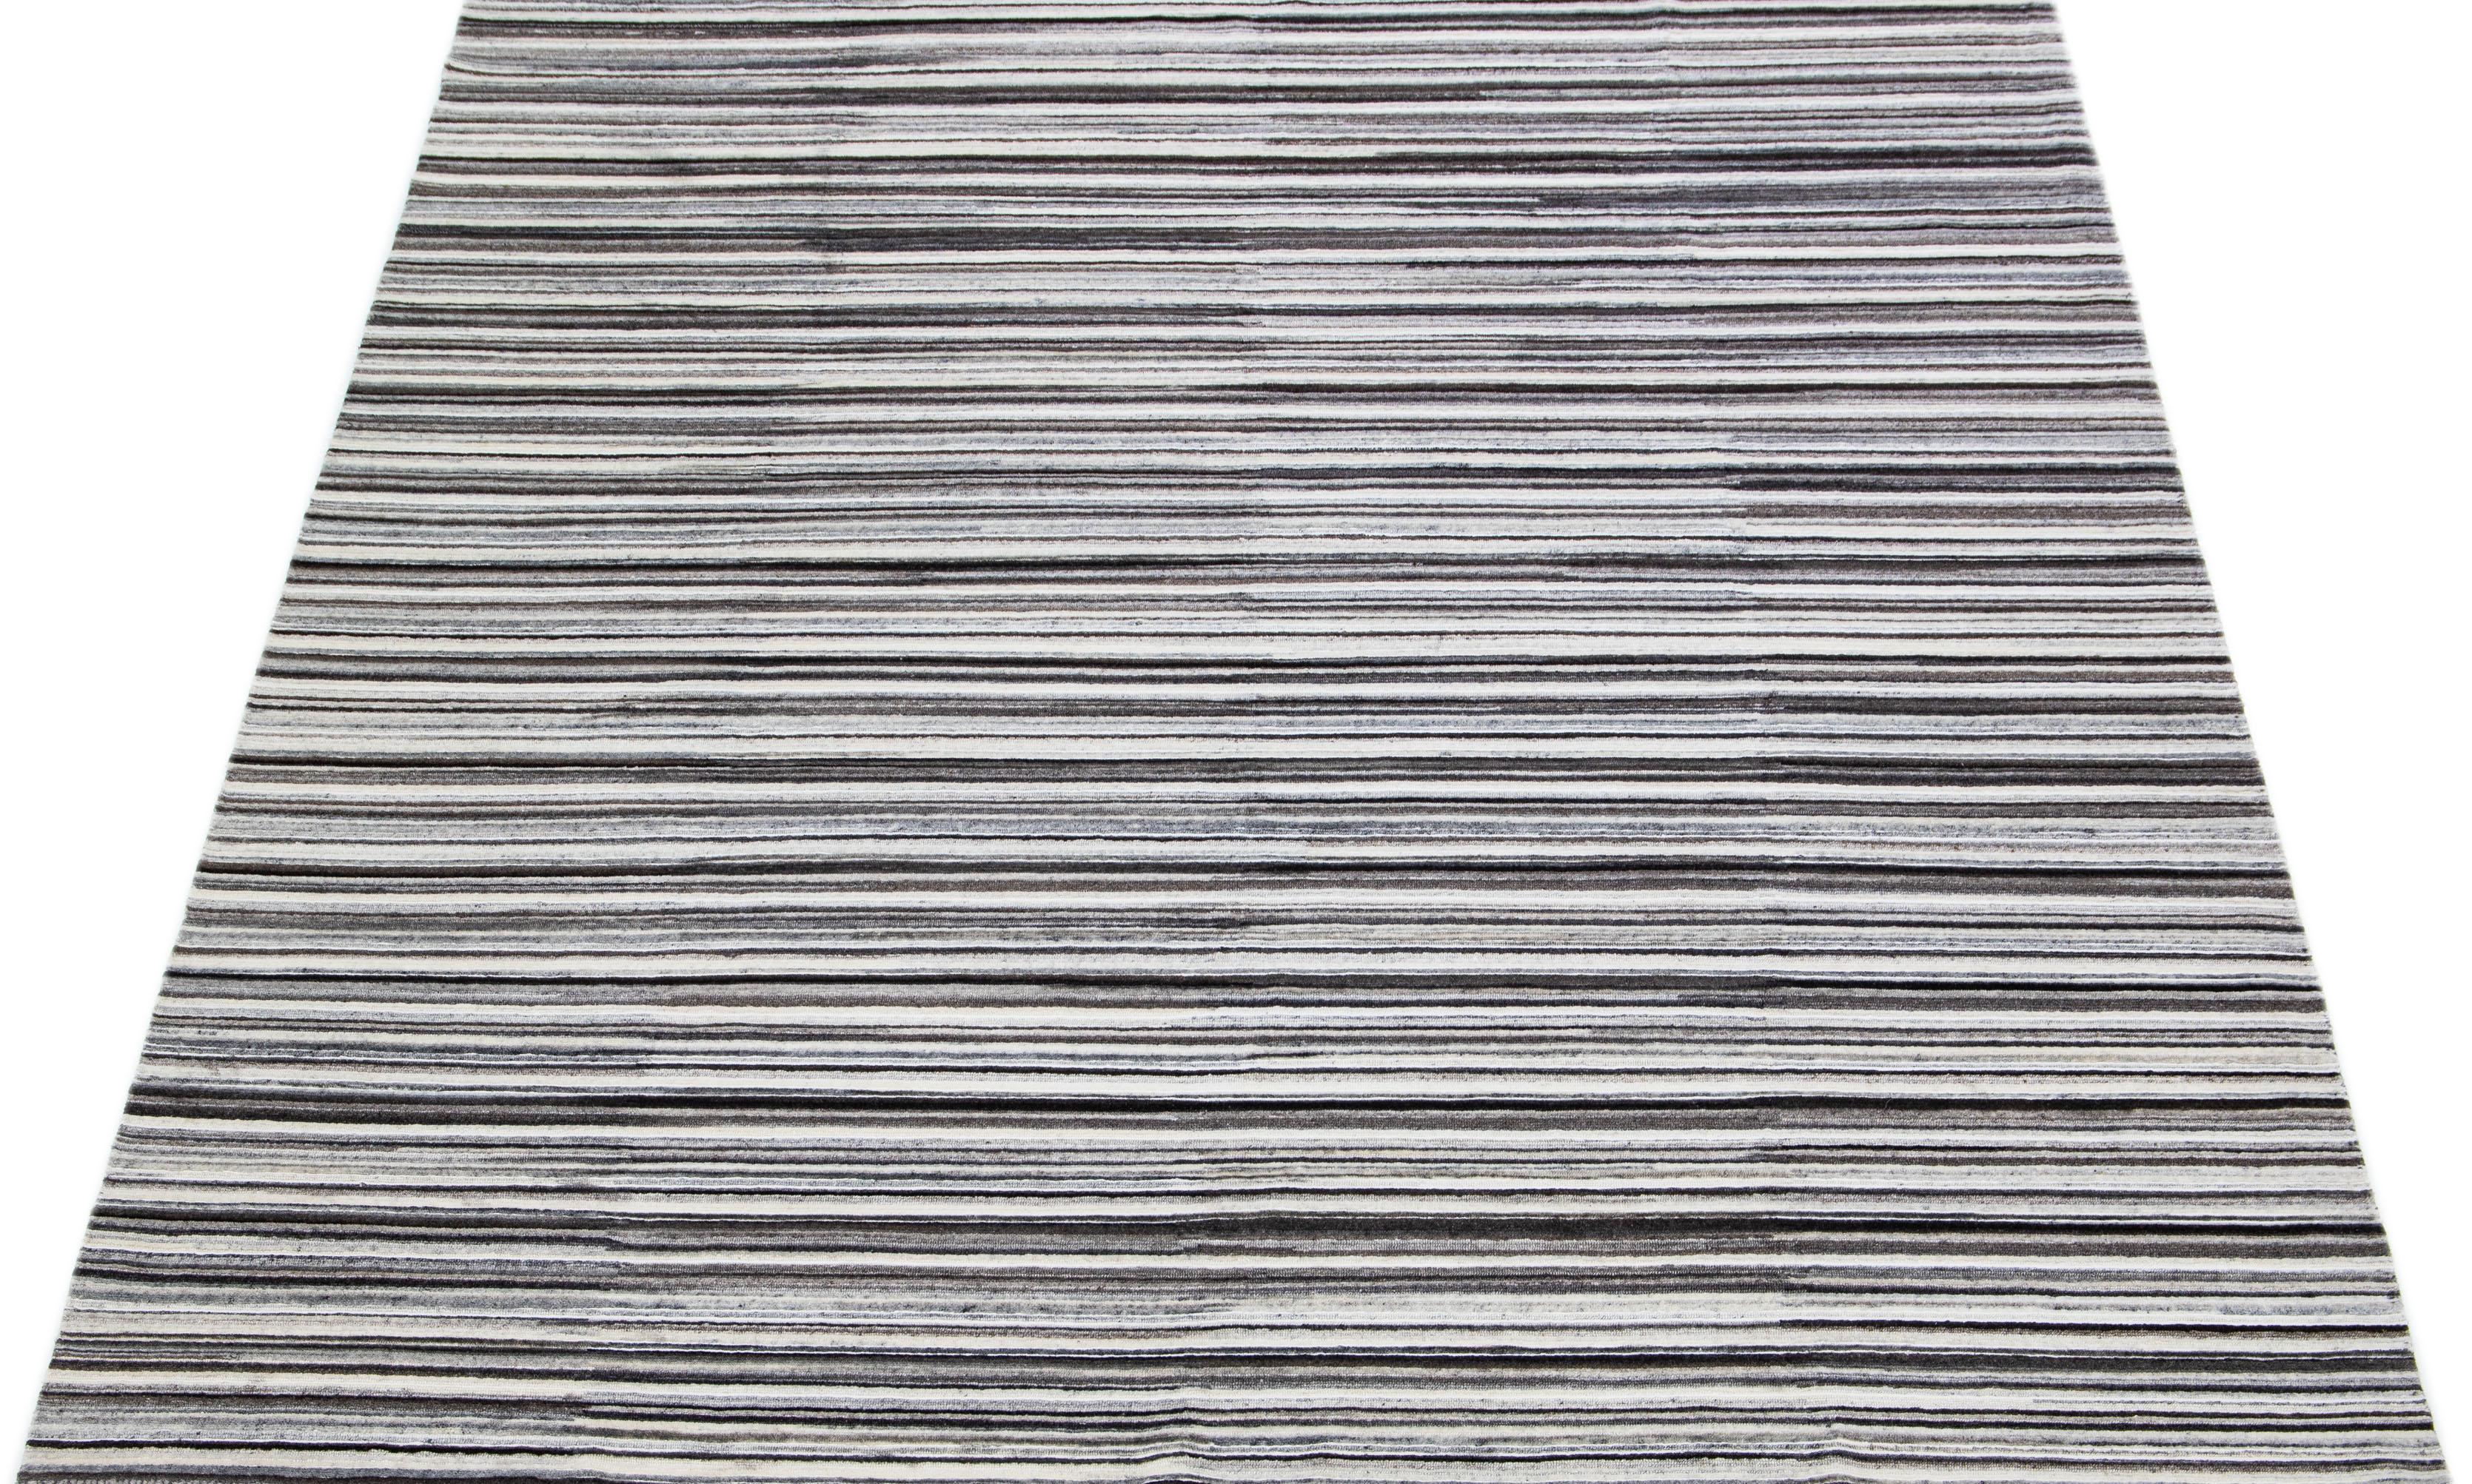 Schöne Apadana's handgefertigte Bambus & Seide indischen Rillen Teppich mit Elfenbein, grau, braun und schwarz Farben Feld. Dieser Teppich aus der Groove Collection hat ein durchgehendes Streifendesign.

Dieser Teppich misst 8' x